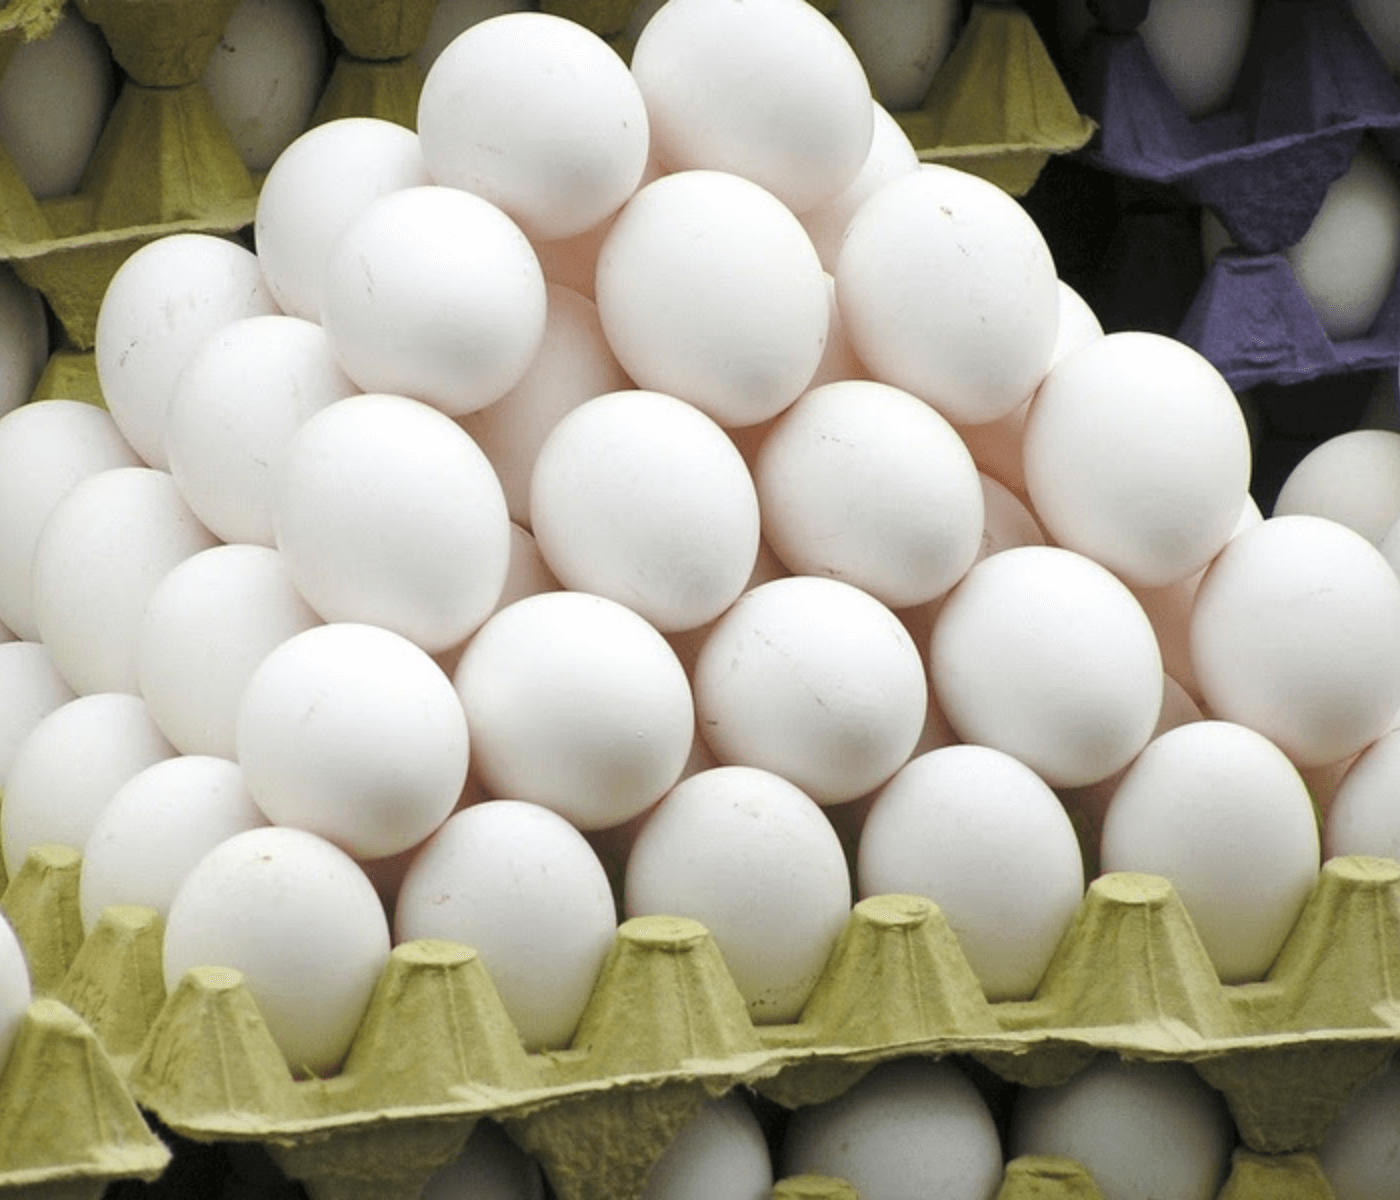 Ovos no supermercado: Como fazer a escolha certa e garantir sua qualidade